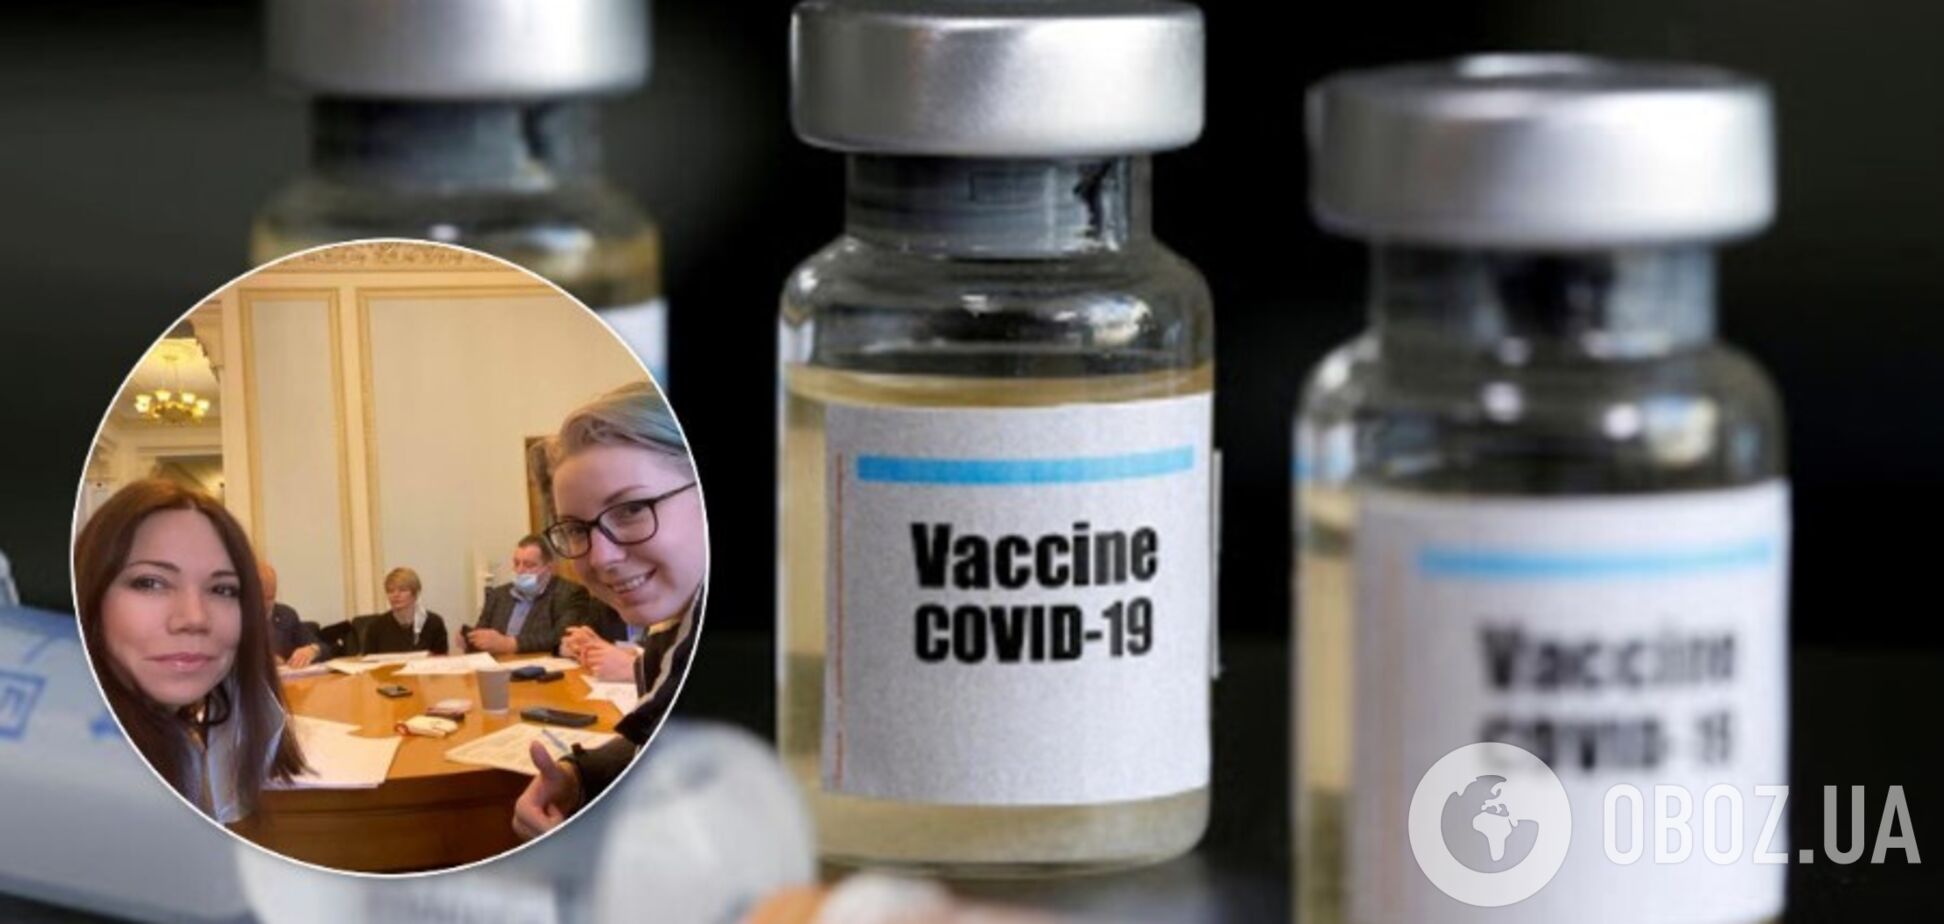 Сюмар сообщила, что профильный комитет поддержал запрет российской вакцины в Украине